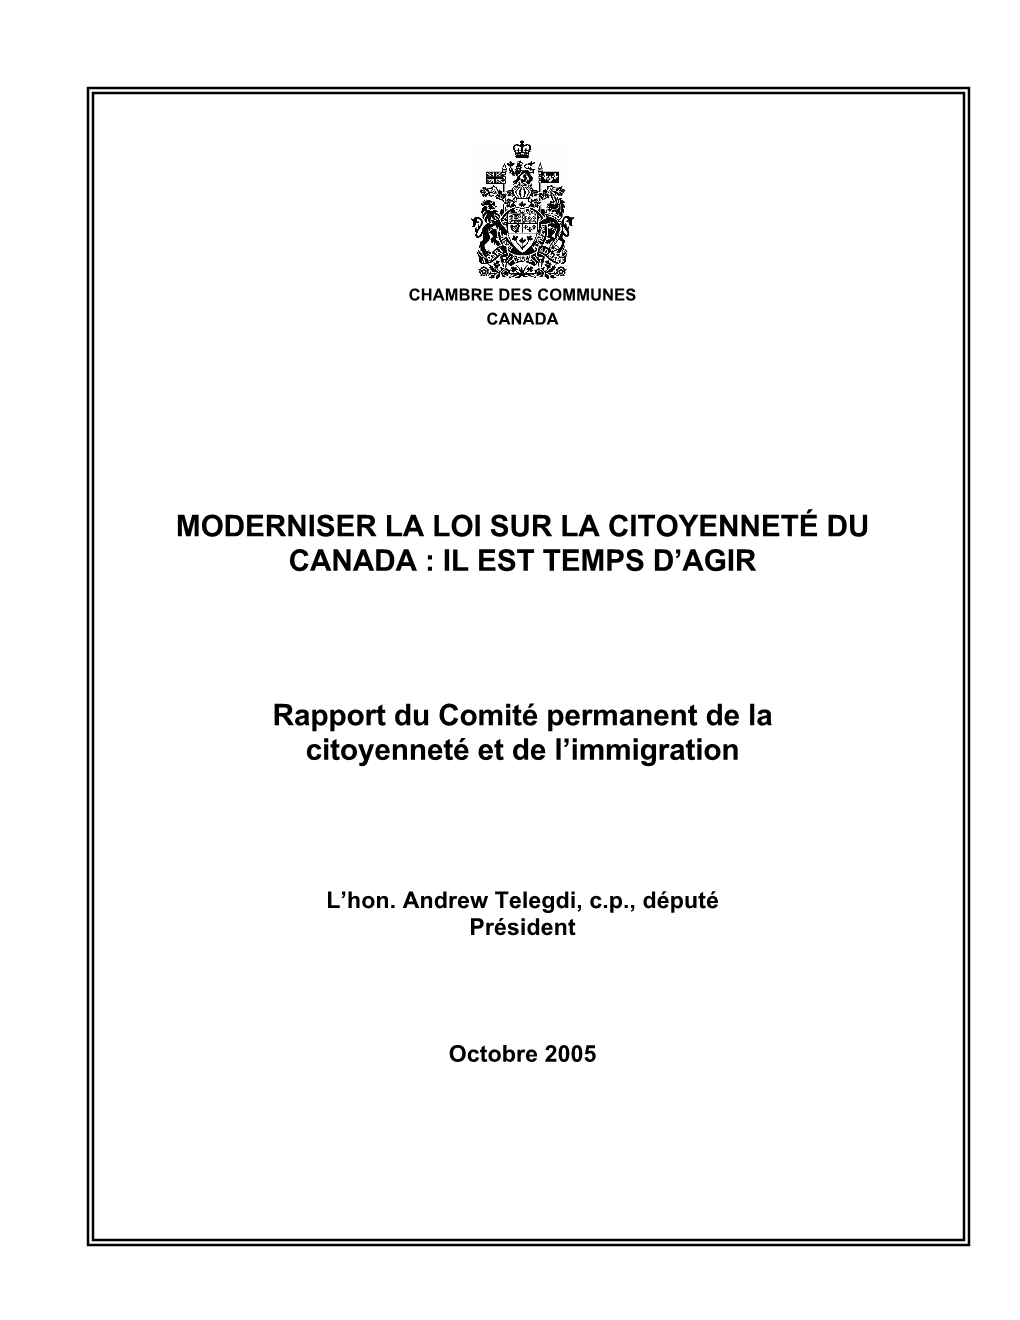 Moderniser La Loi Sur La Citoyenneté Du Canada : Il Est Temps D’Agir